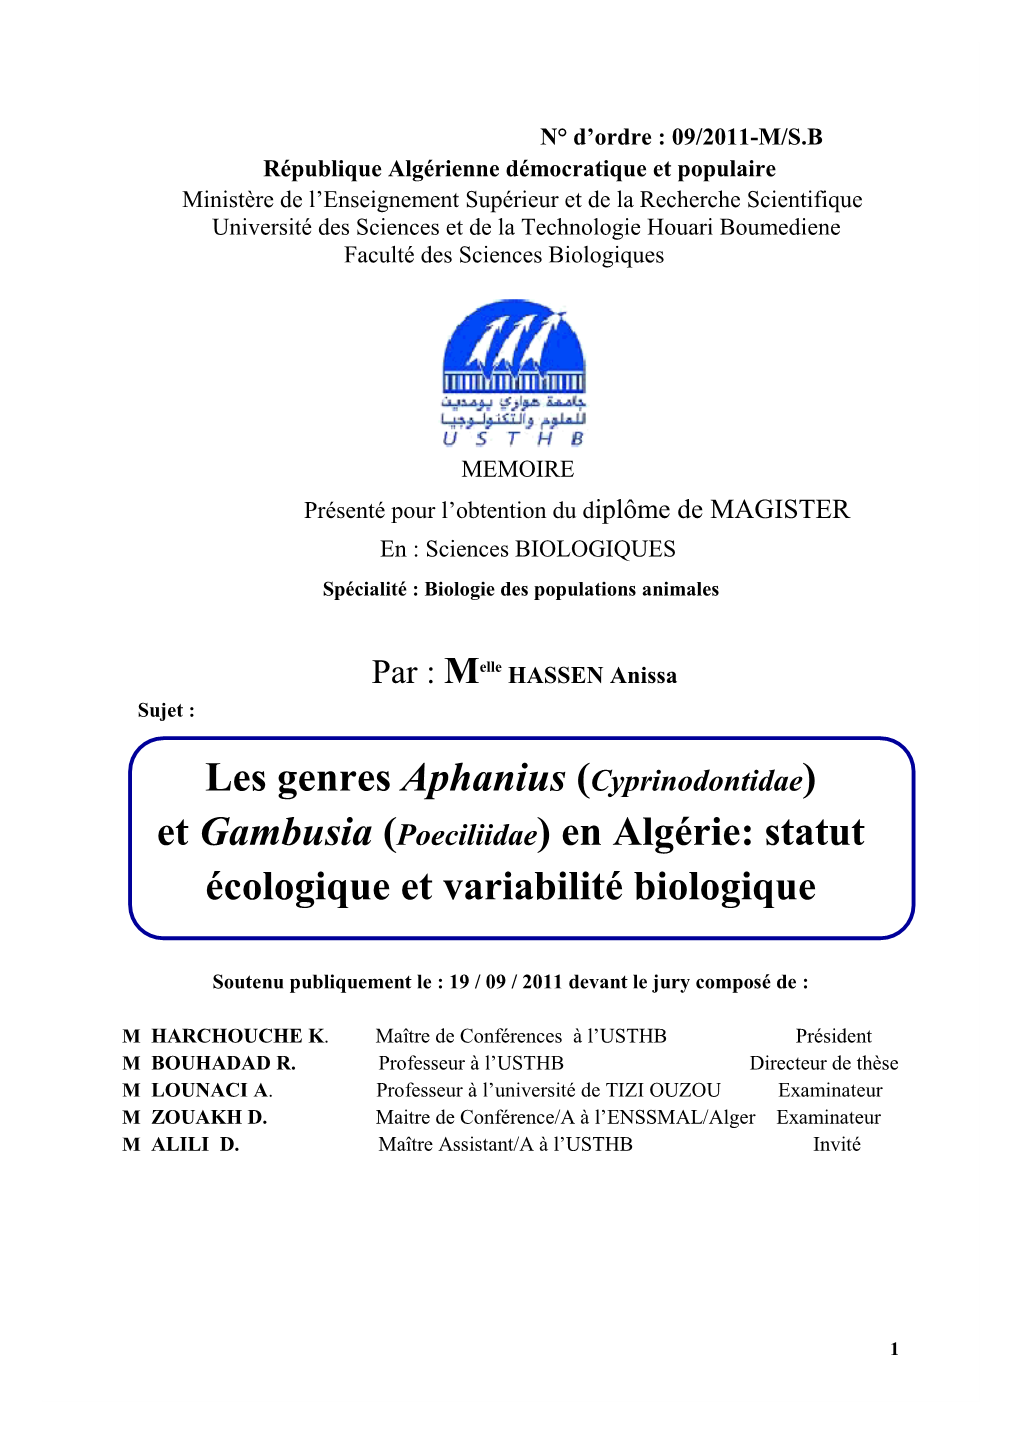 (Cyprinodontidae) Et Gambusia (Poeciliidae) En Algérie: Statut Écologique Et Variabilité Biologique